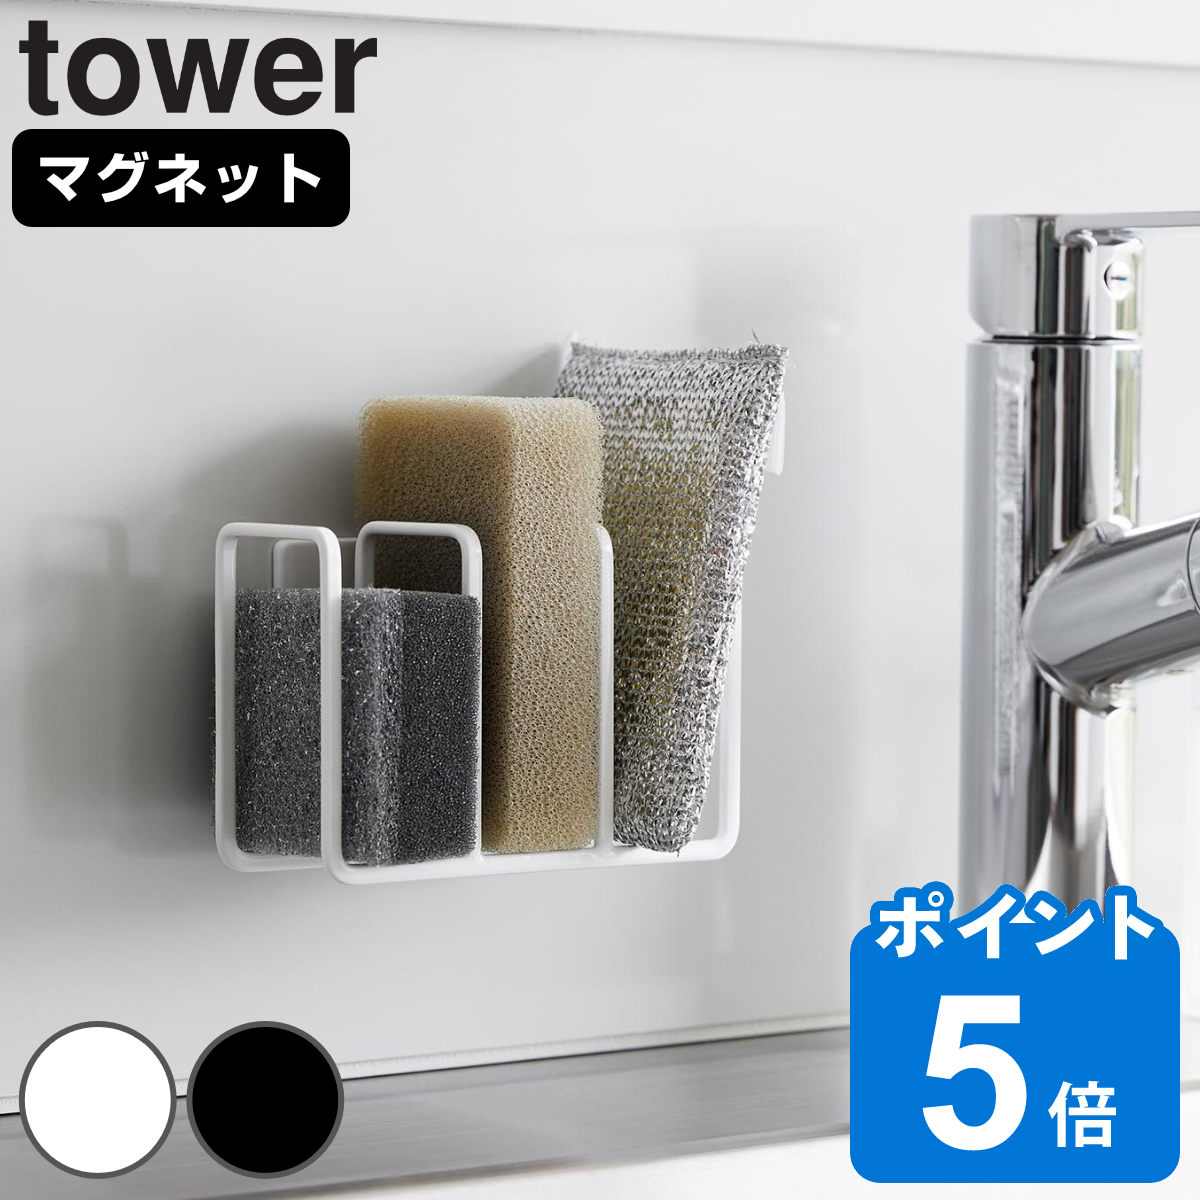 山崎実業 tower マグネット スポンジホルダー タワー 3連